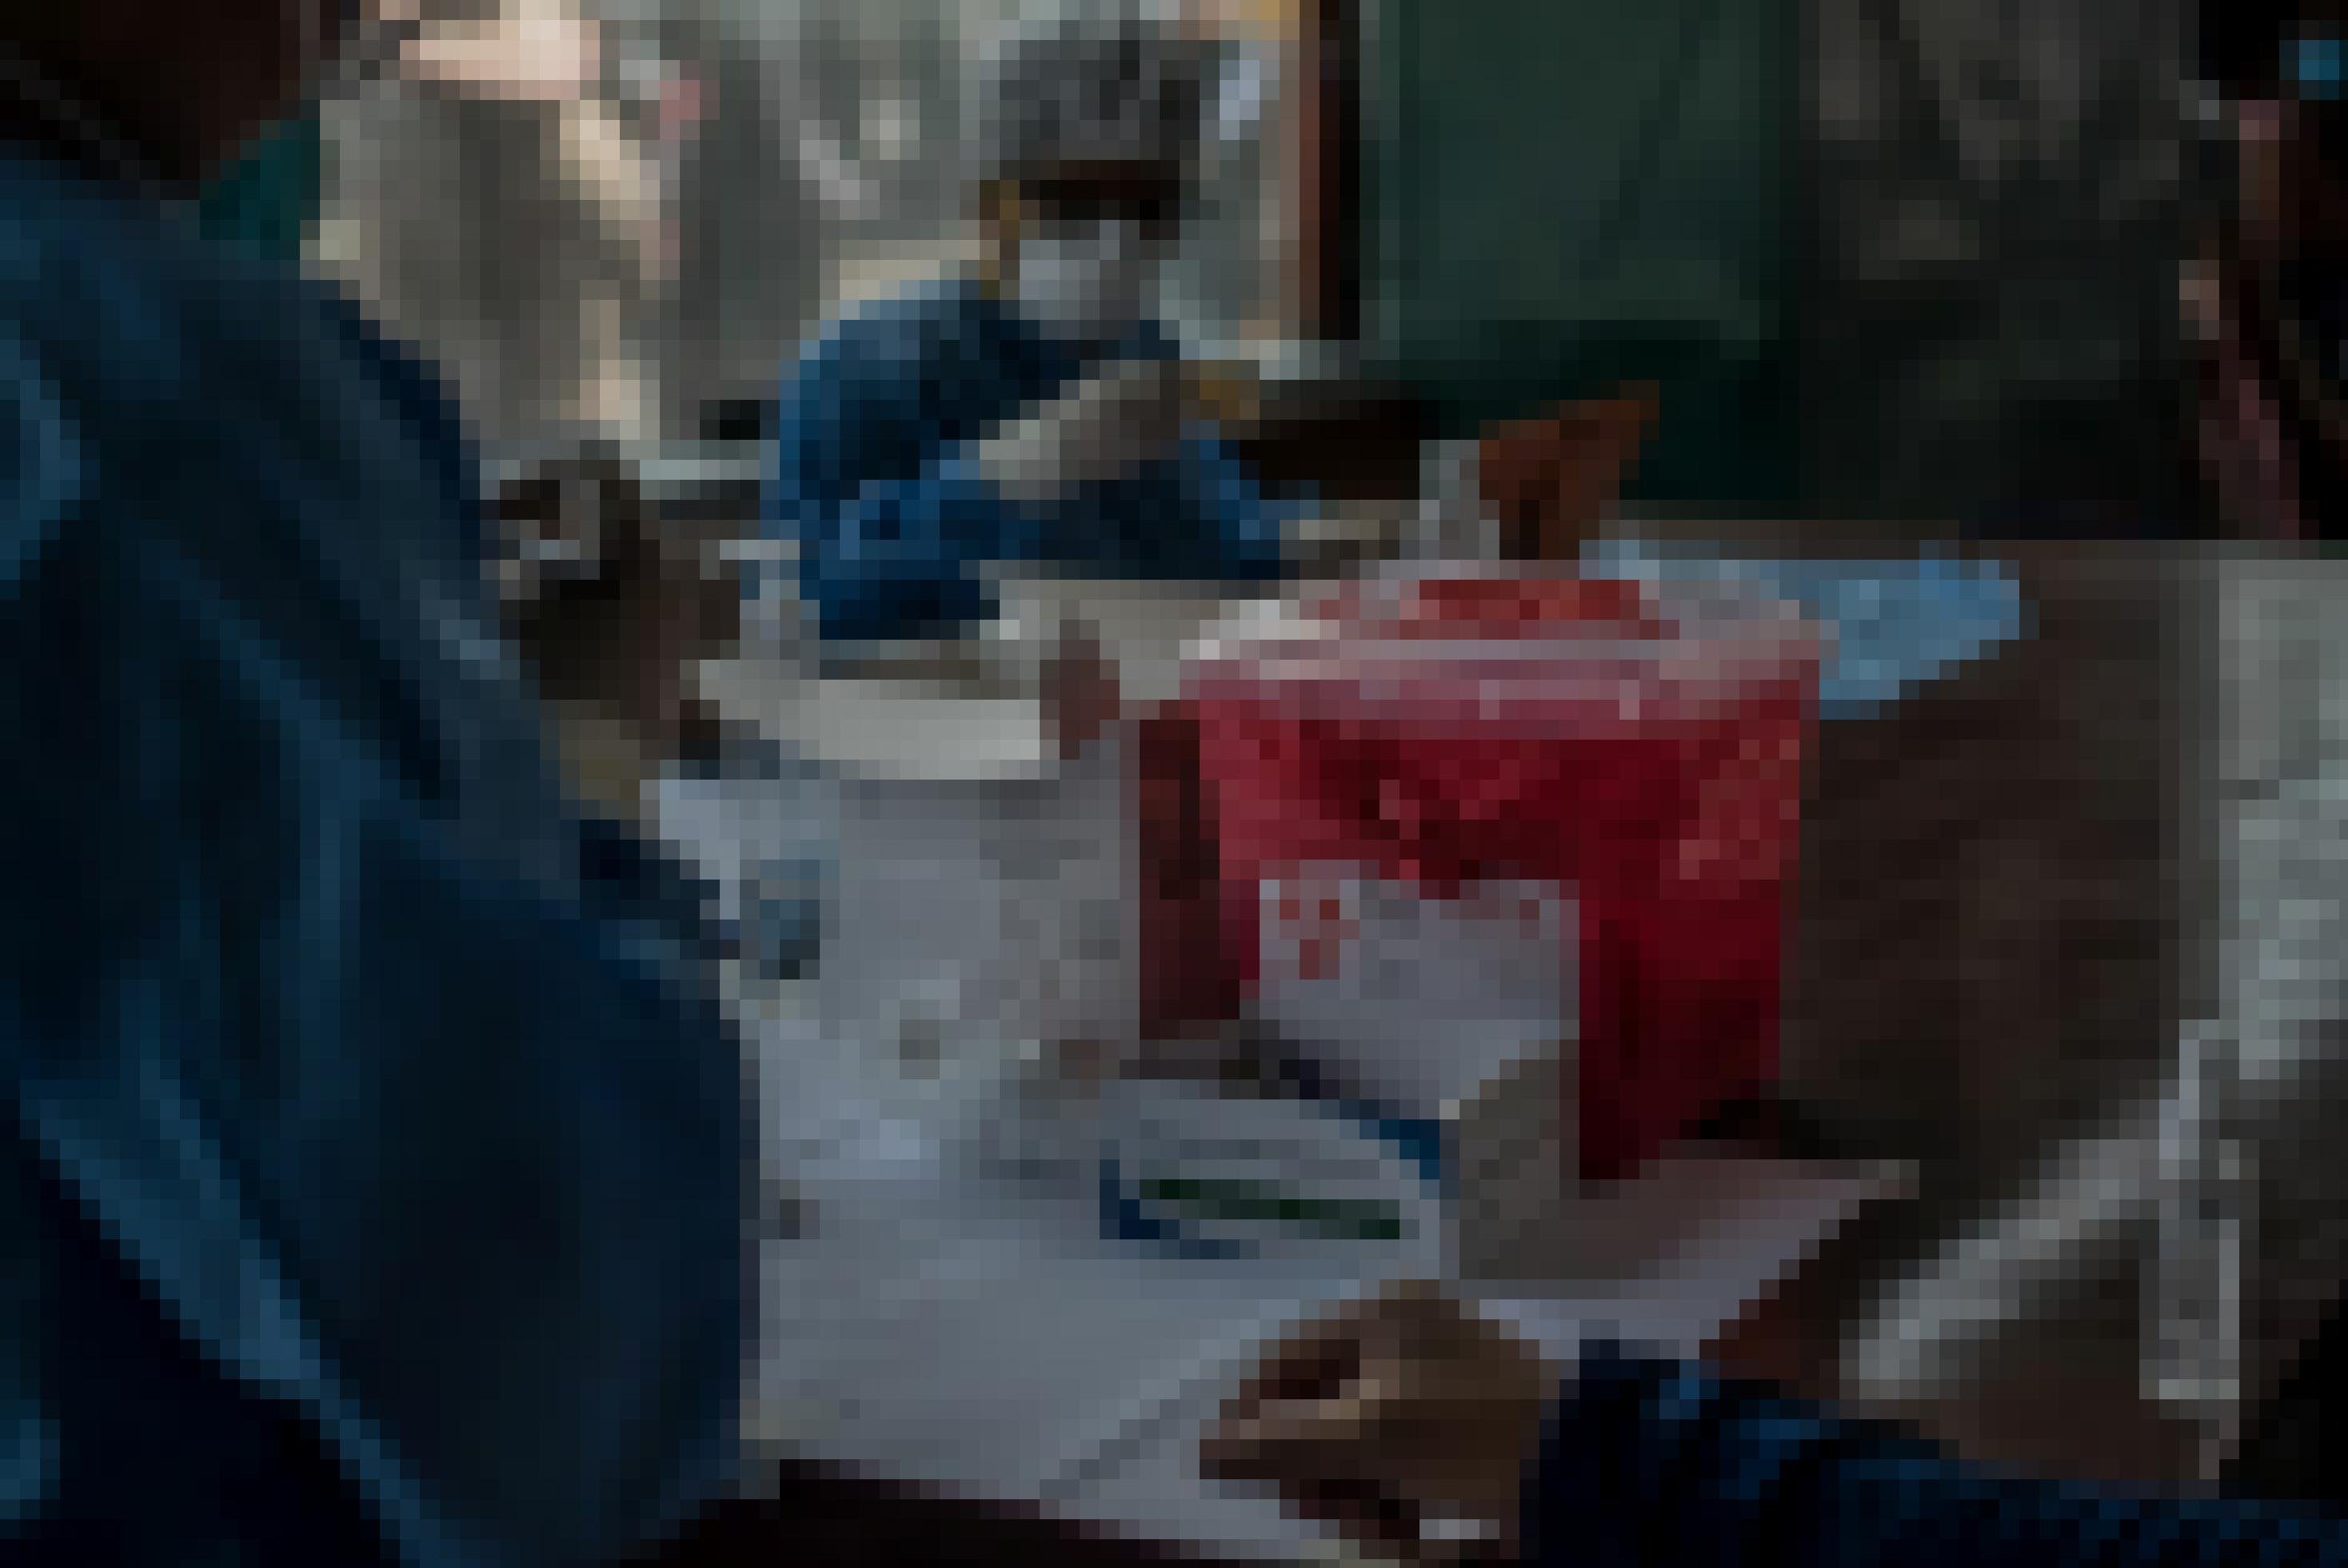 Im Hintergrund steht ein Mann in blauem Hygienekittel und Mundschutz, der eine Spritze aufzieht. Im Vordergrund steht ein kleiner roter Plastikeimer für gebrauchte Spritzen.